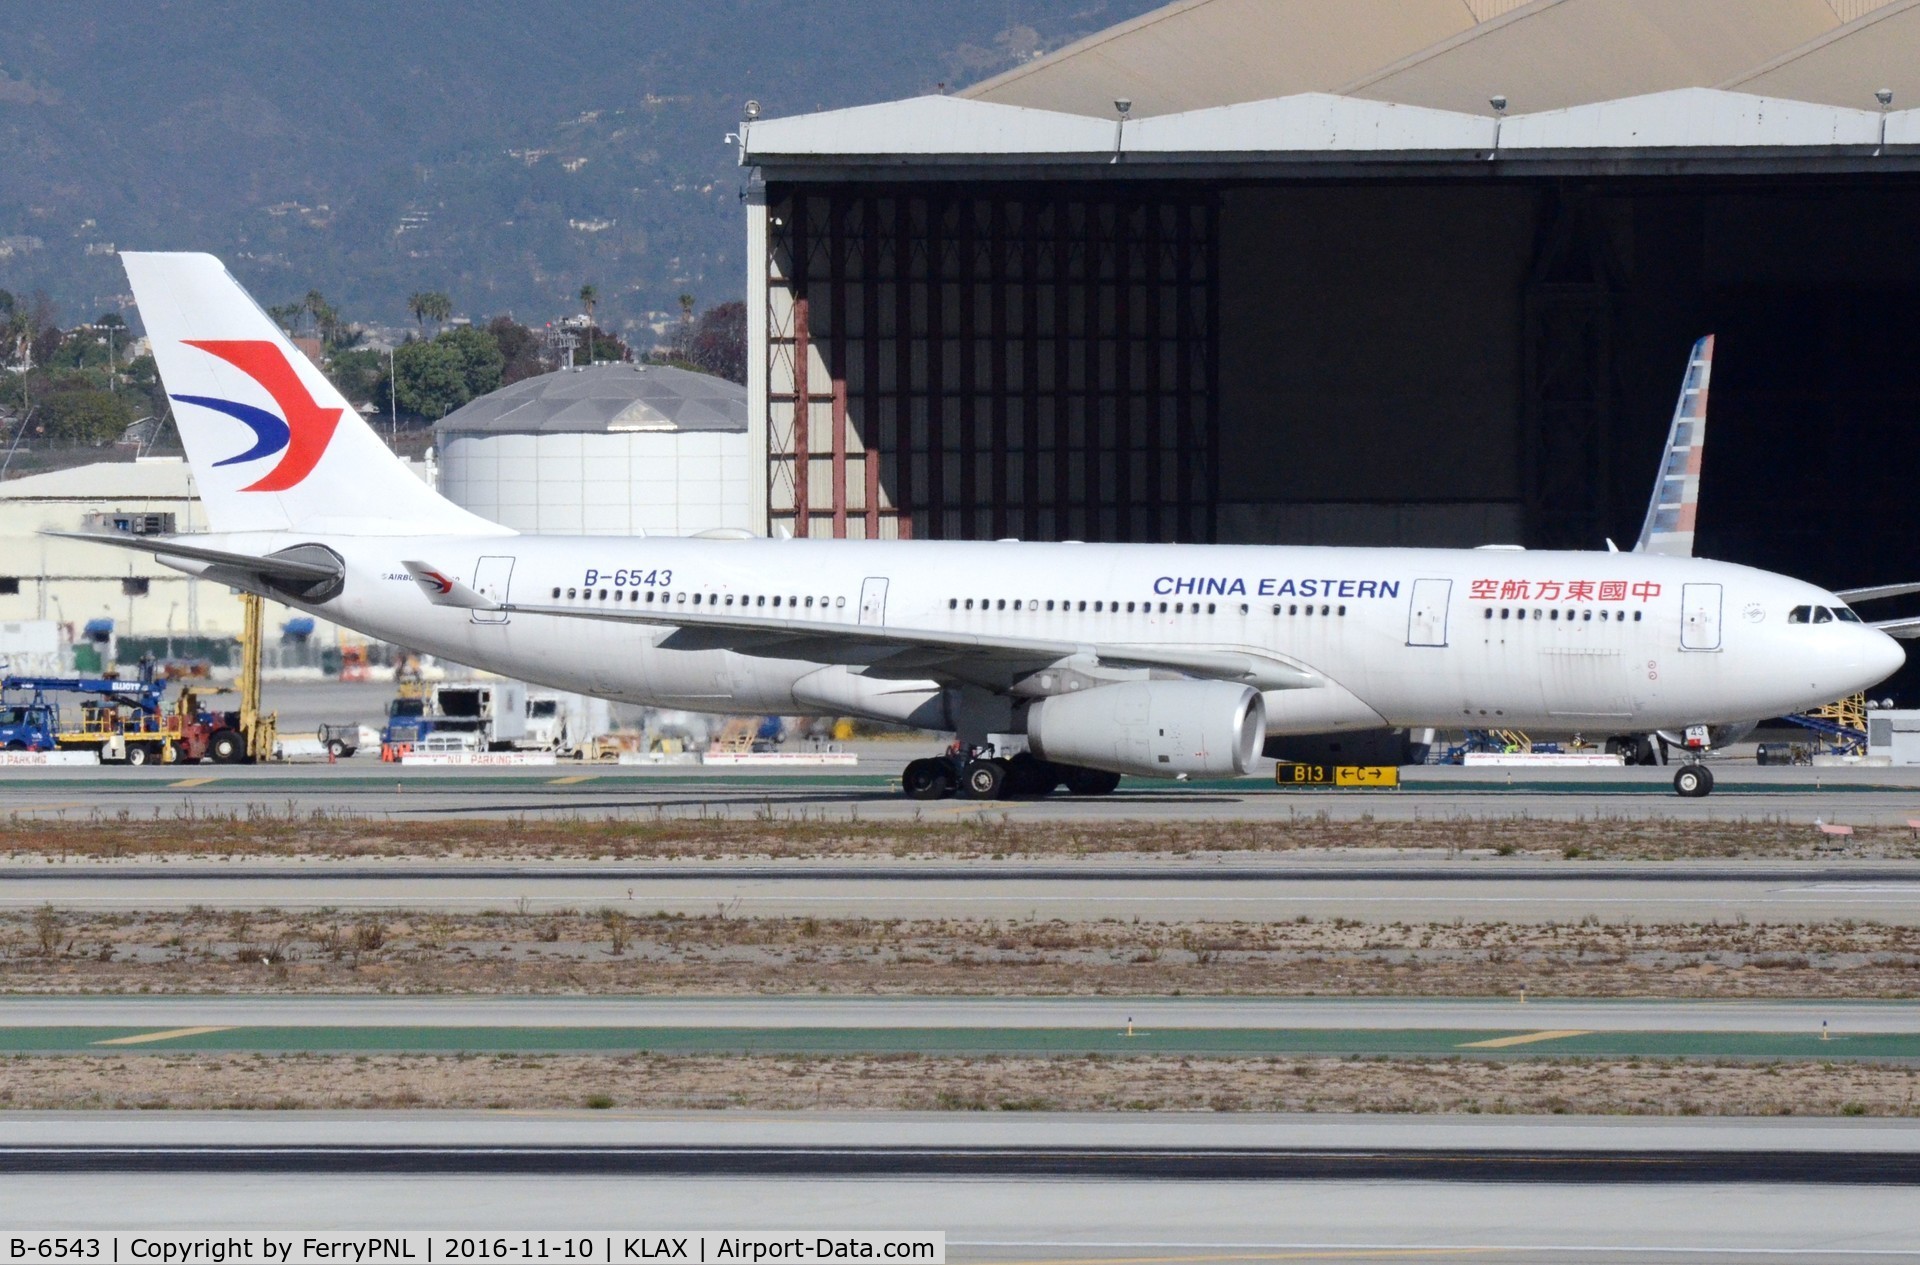 B-6543, 2011 Airbus A330-243 C/N 1280, China Eastern A332